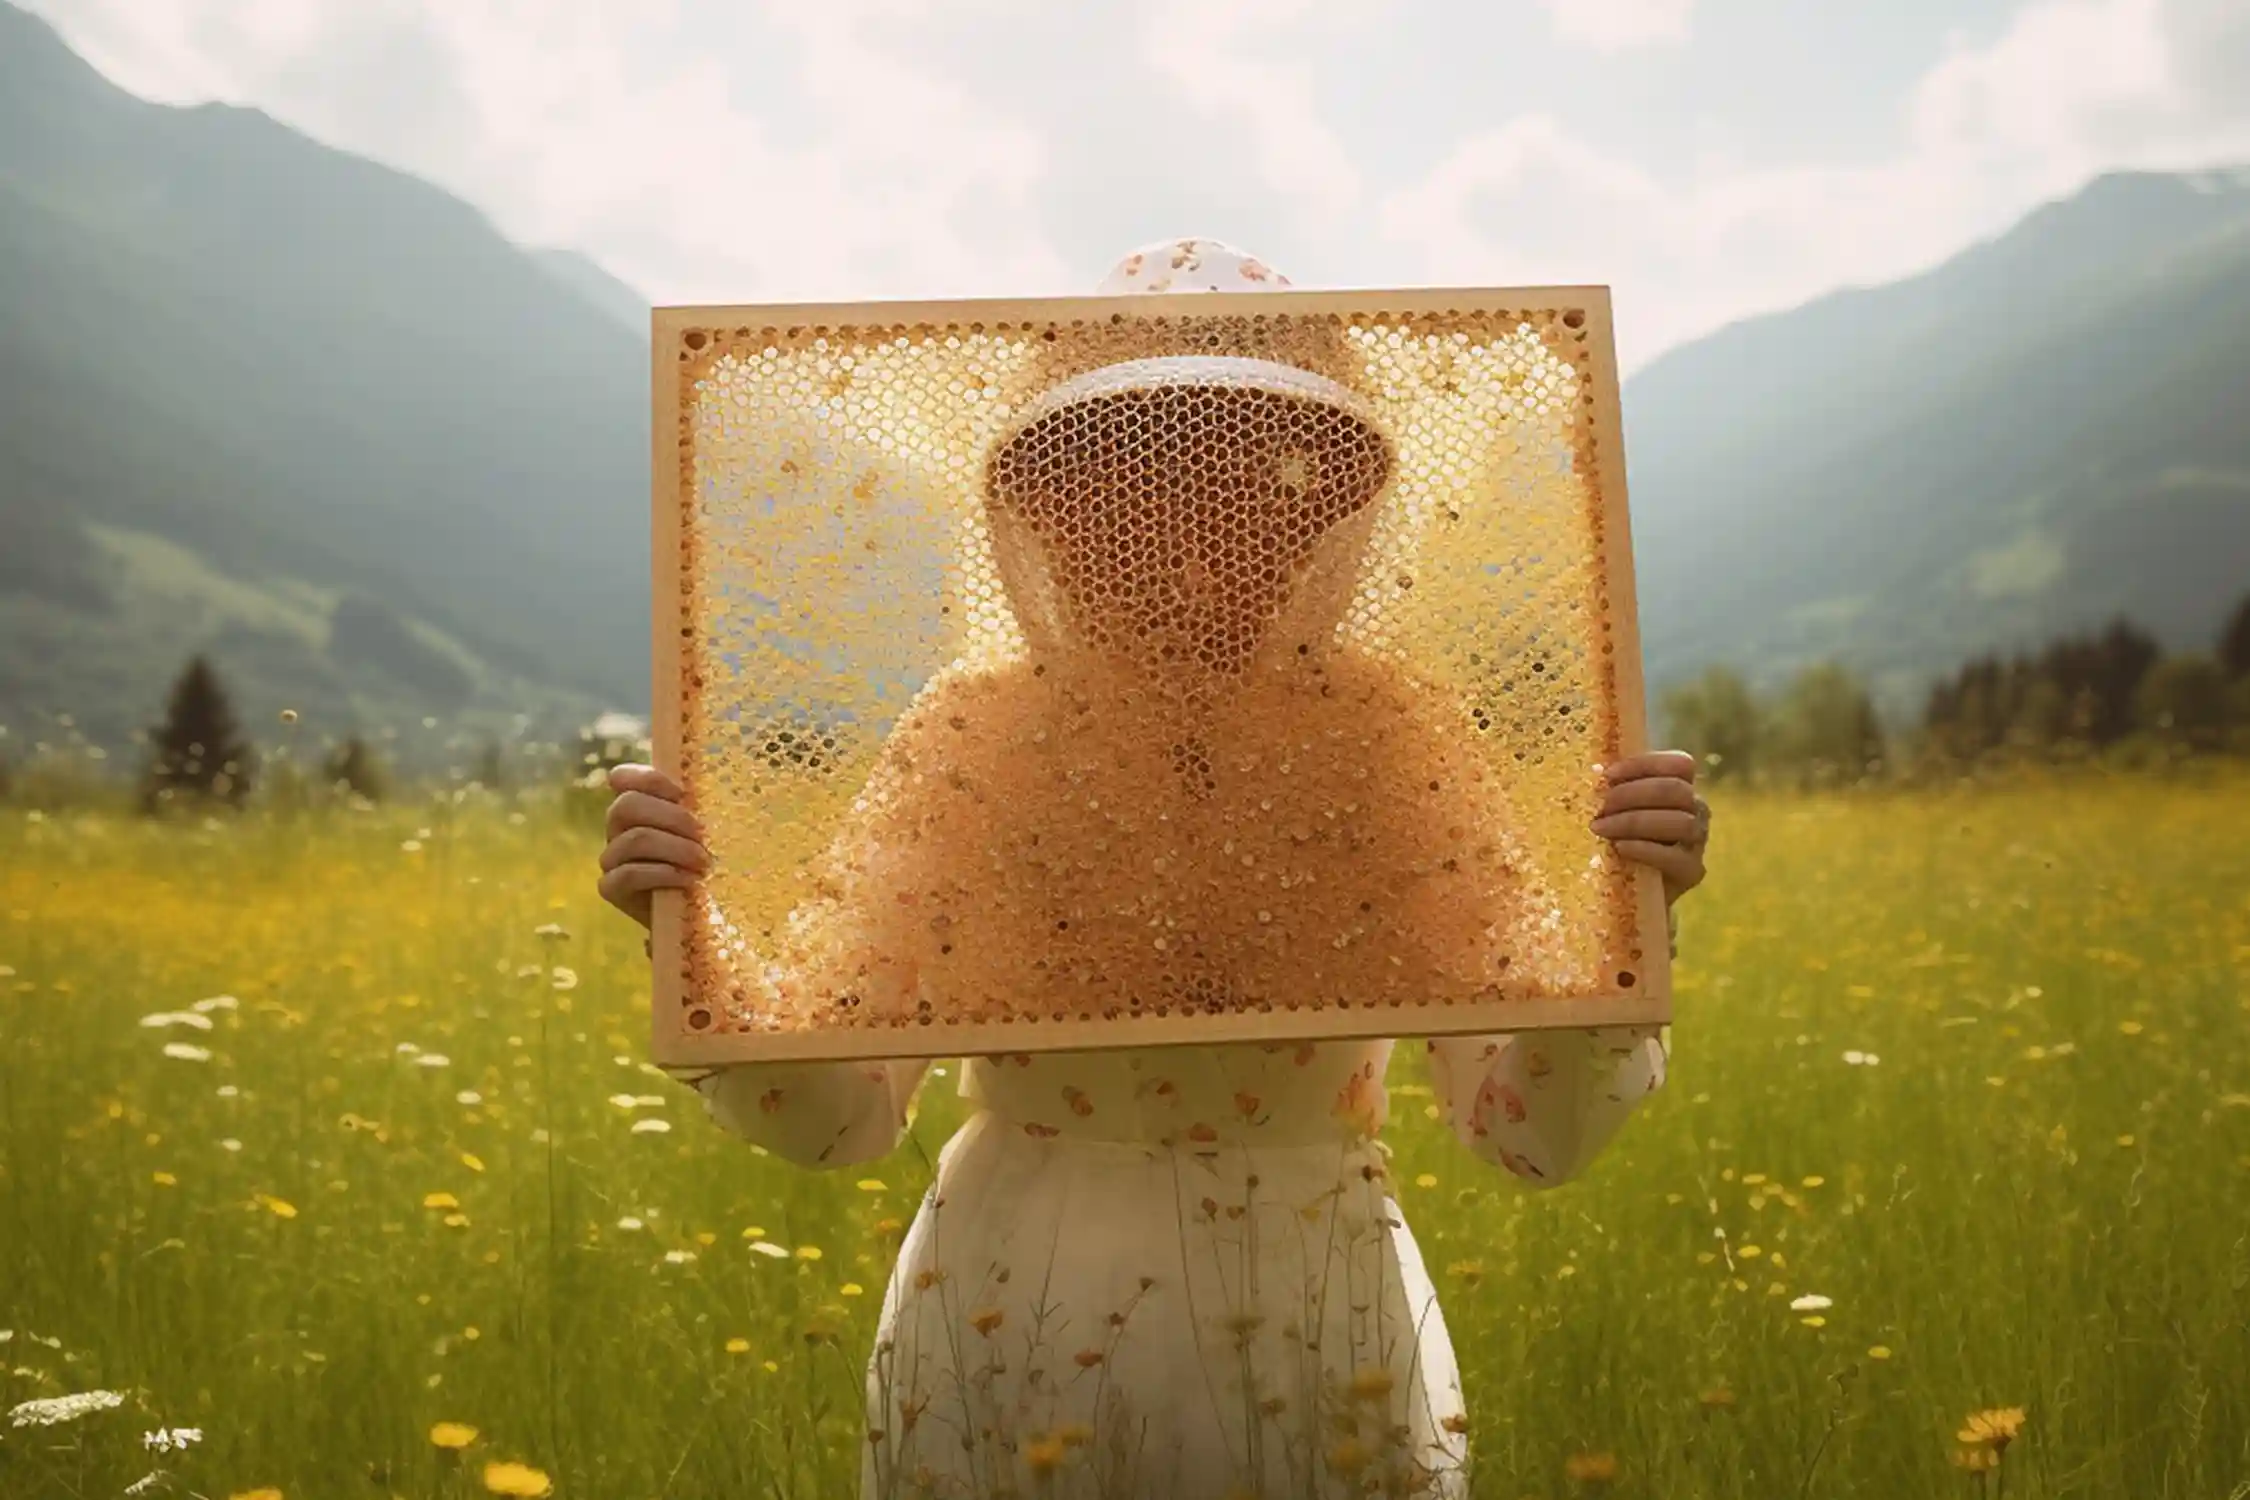 Frau mit Bienen auf der Bluse. Honigwaben kaufen wird sie nicht, aber sie scheint interessiert am Themah 'Honigwabe essen' sowie 'Honig mit Wabe'.